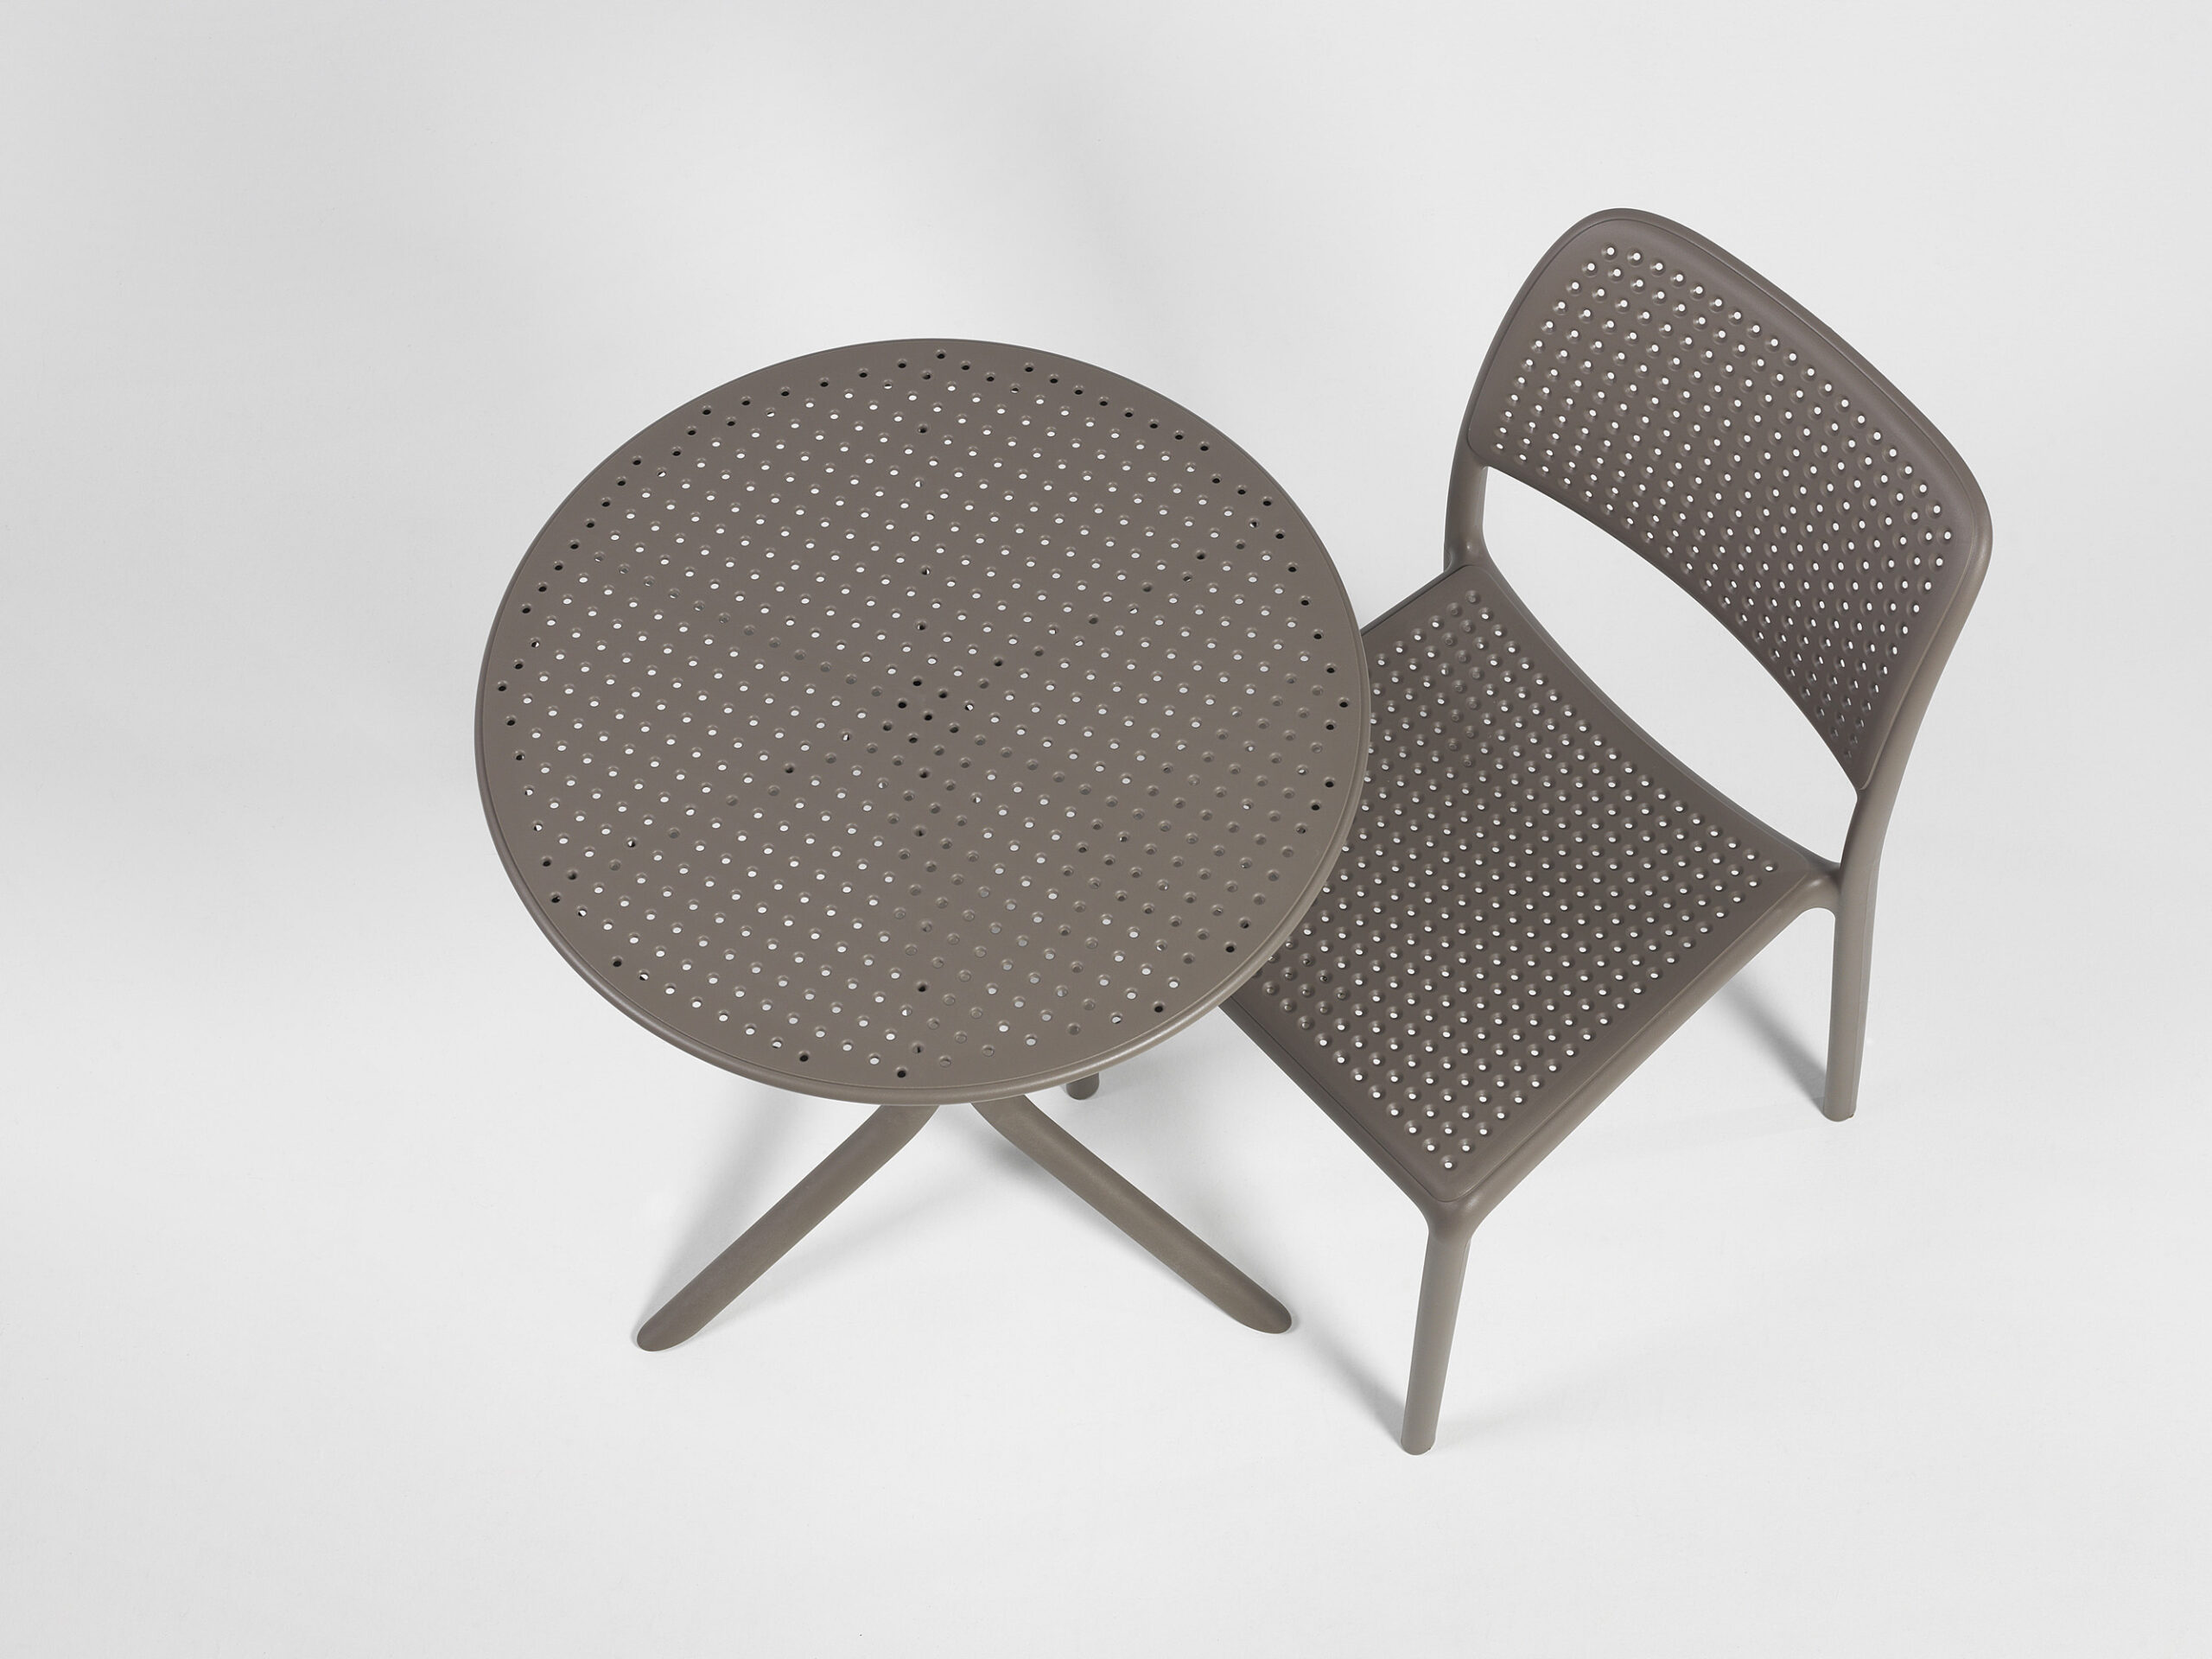 Chaise design d'extérieur - Modèle Bora en polypropylène avec accoudoirs- Mobilier Outdoor - Gasparini Collection